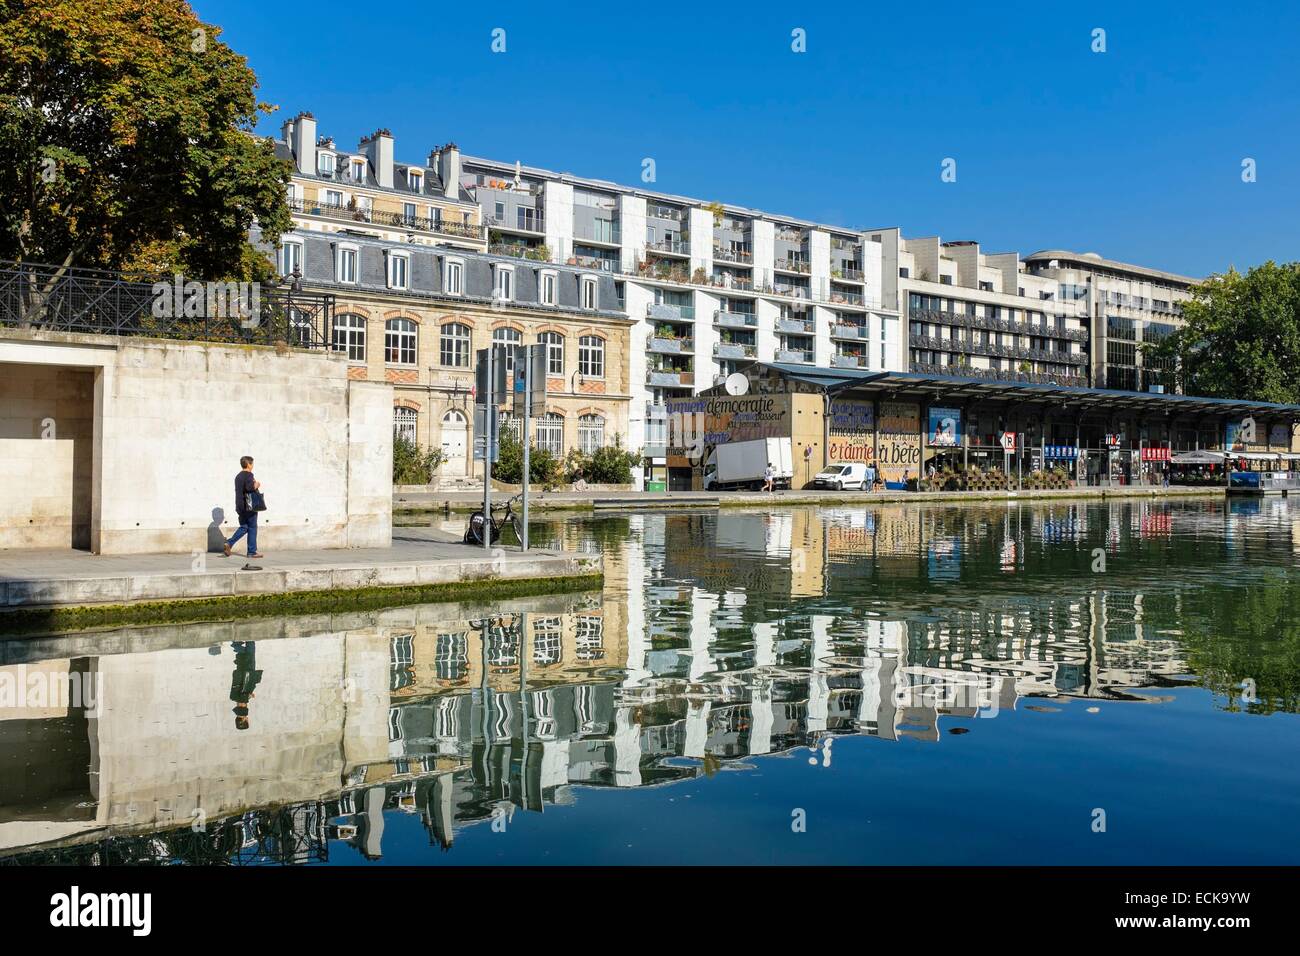 France, Paris, Bassin de la Villette, the largest artificial body of water in Paris, that links the Canal de l'Ourcq to the Canal Saint-Martin Stock Photo